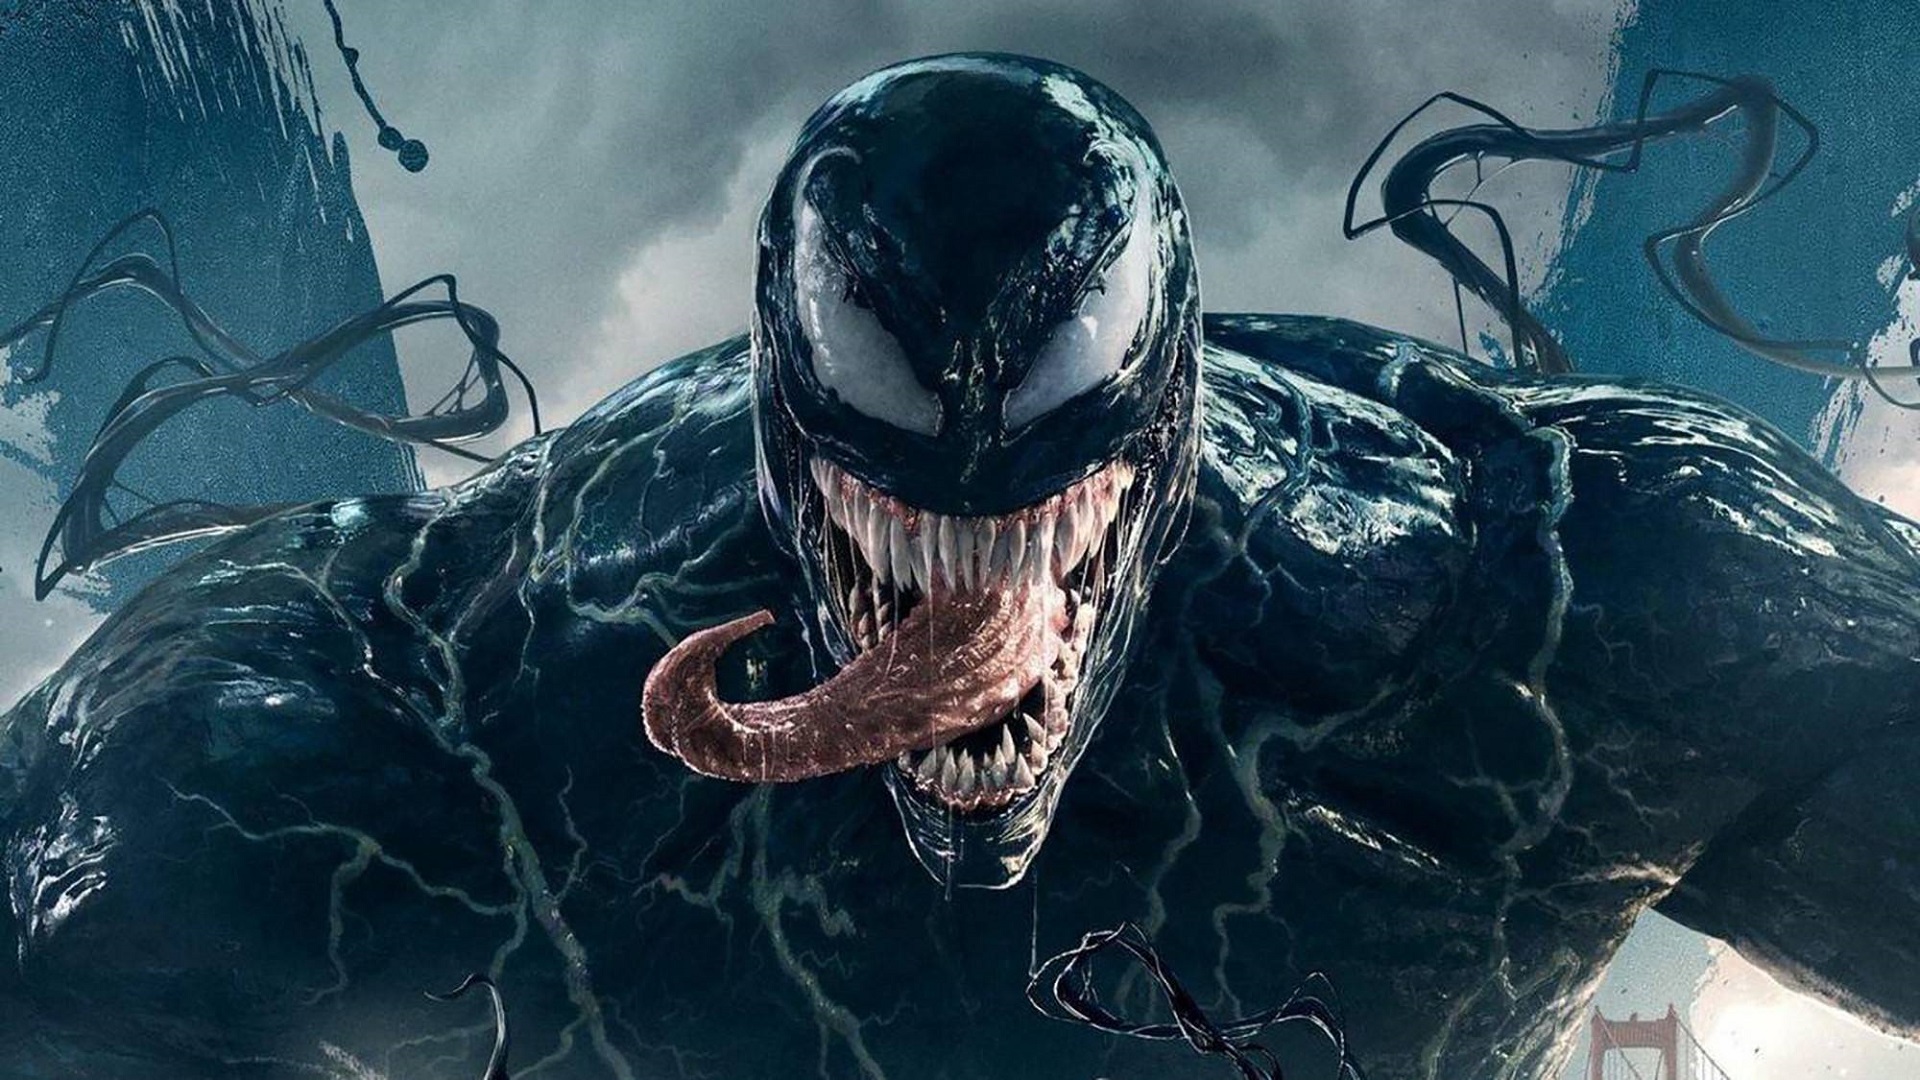 Eine Symbiose aus Film und Wissenschaft: In Australien wurde eine neue Art giftiger Spinnen entdeckt und nach dem Marvel-Antihelden Tom Hardy benannt.